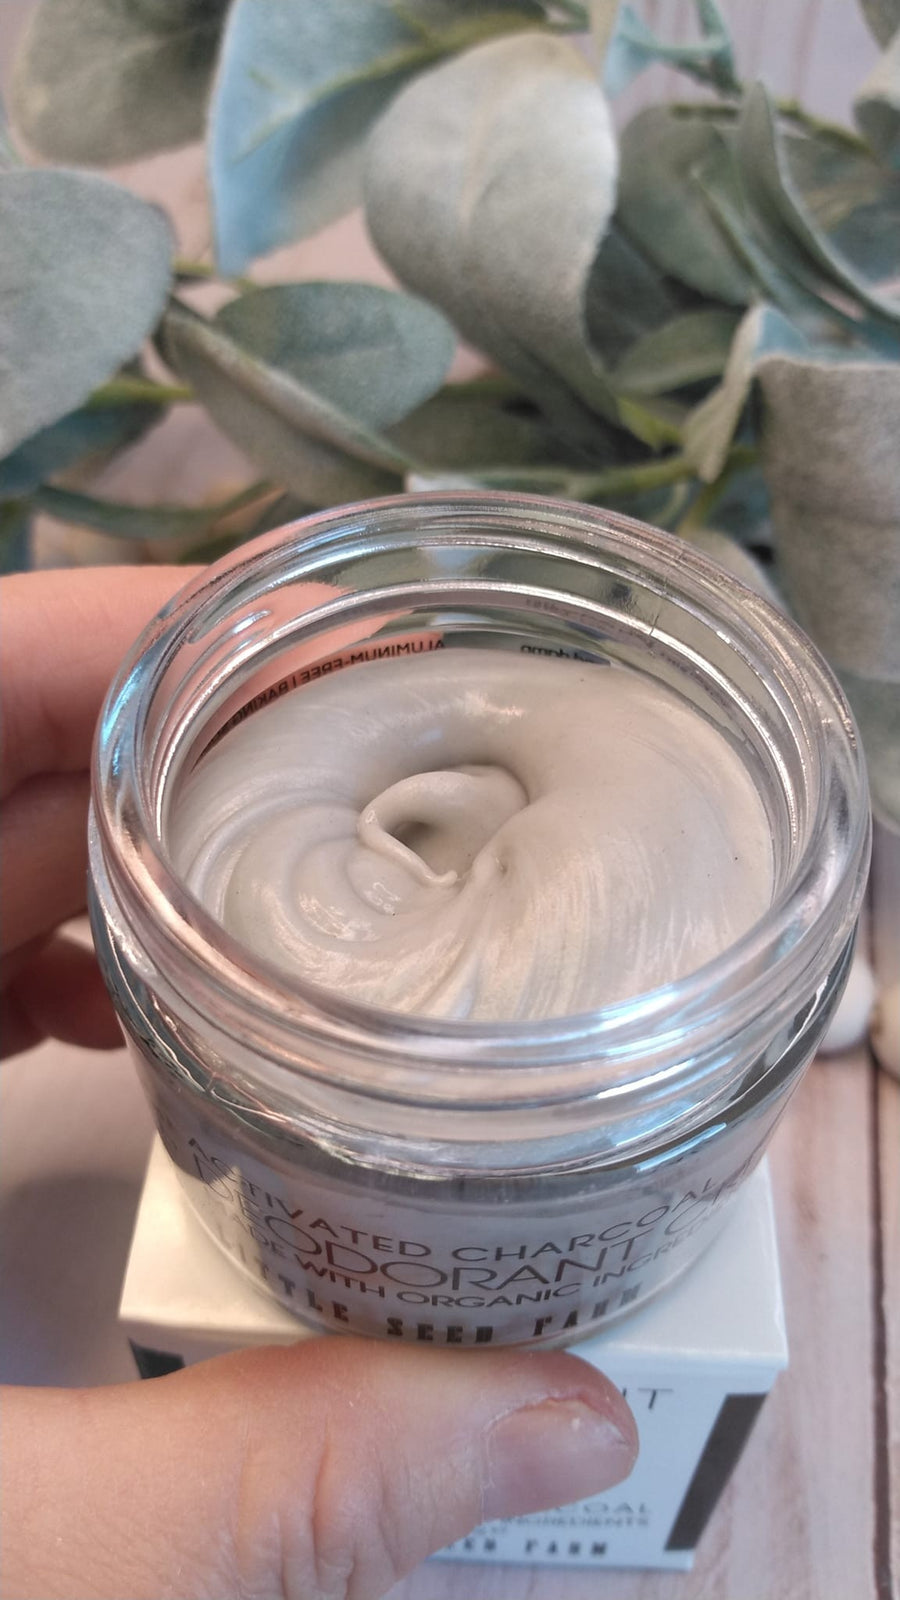 Deodorant Cream - Paste - Organic